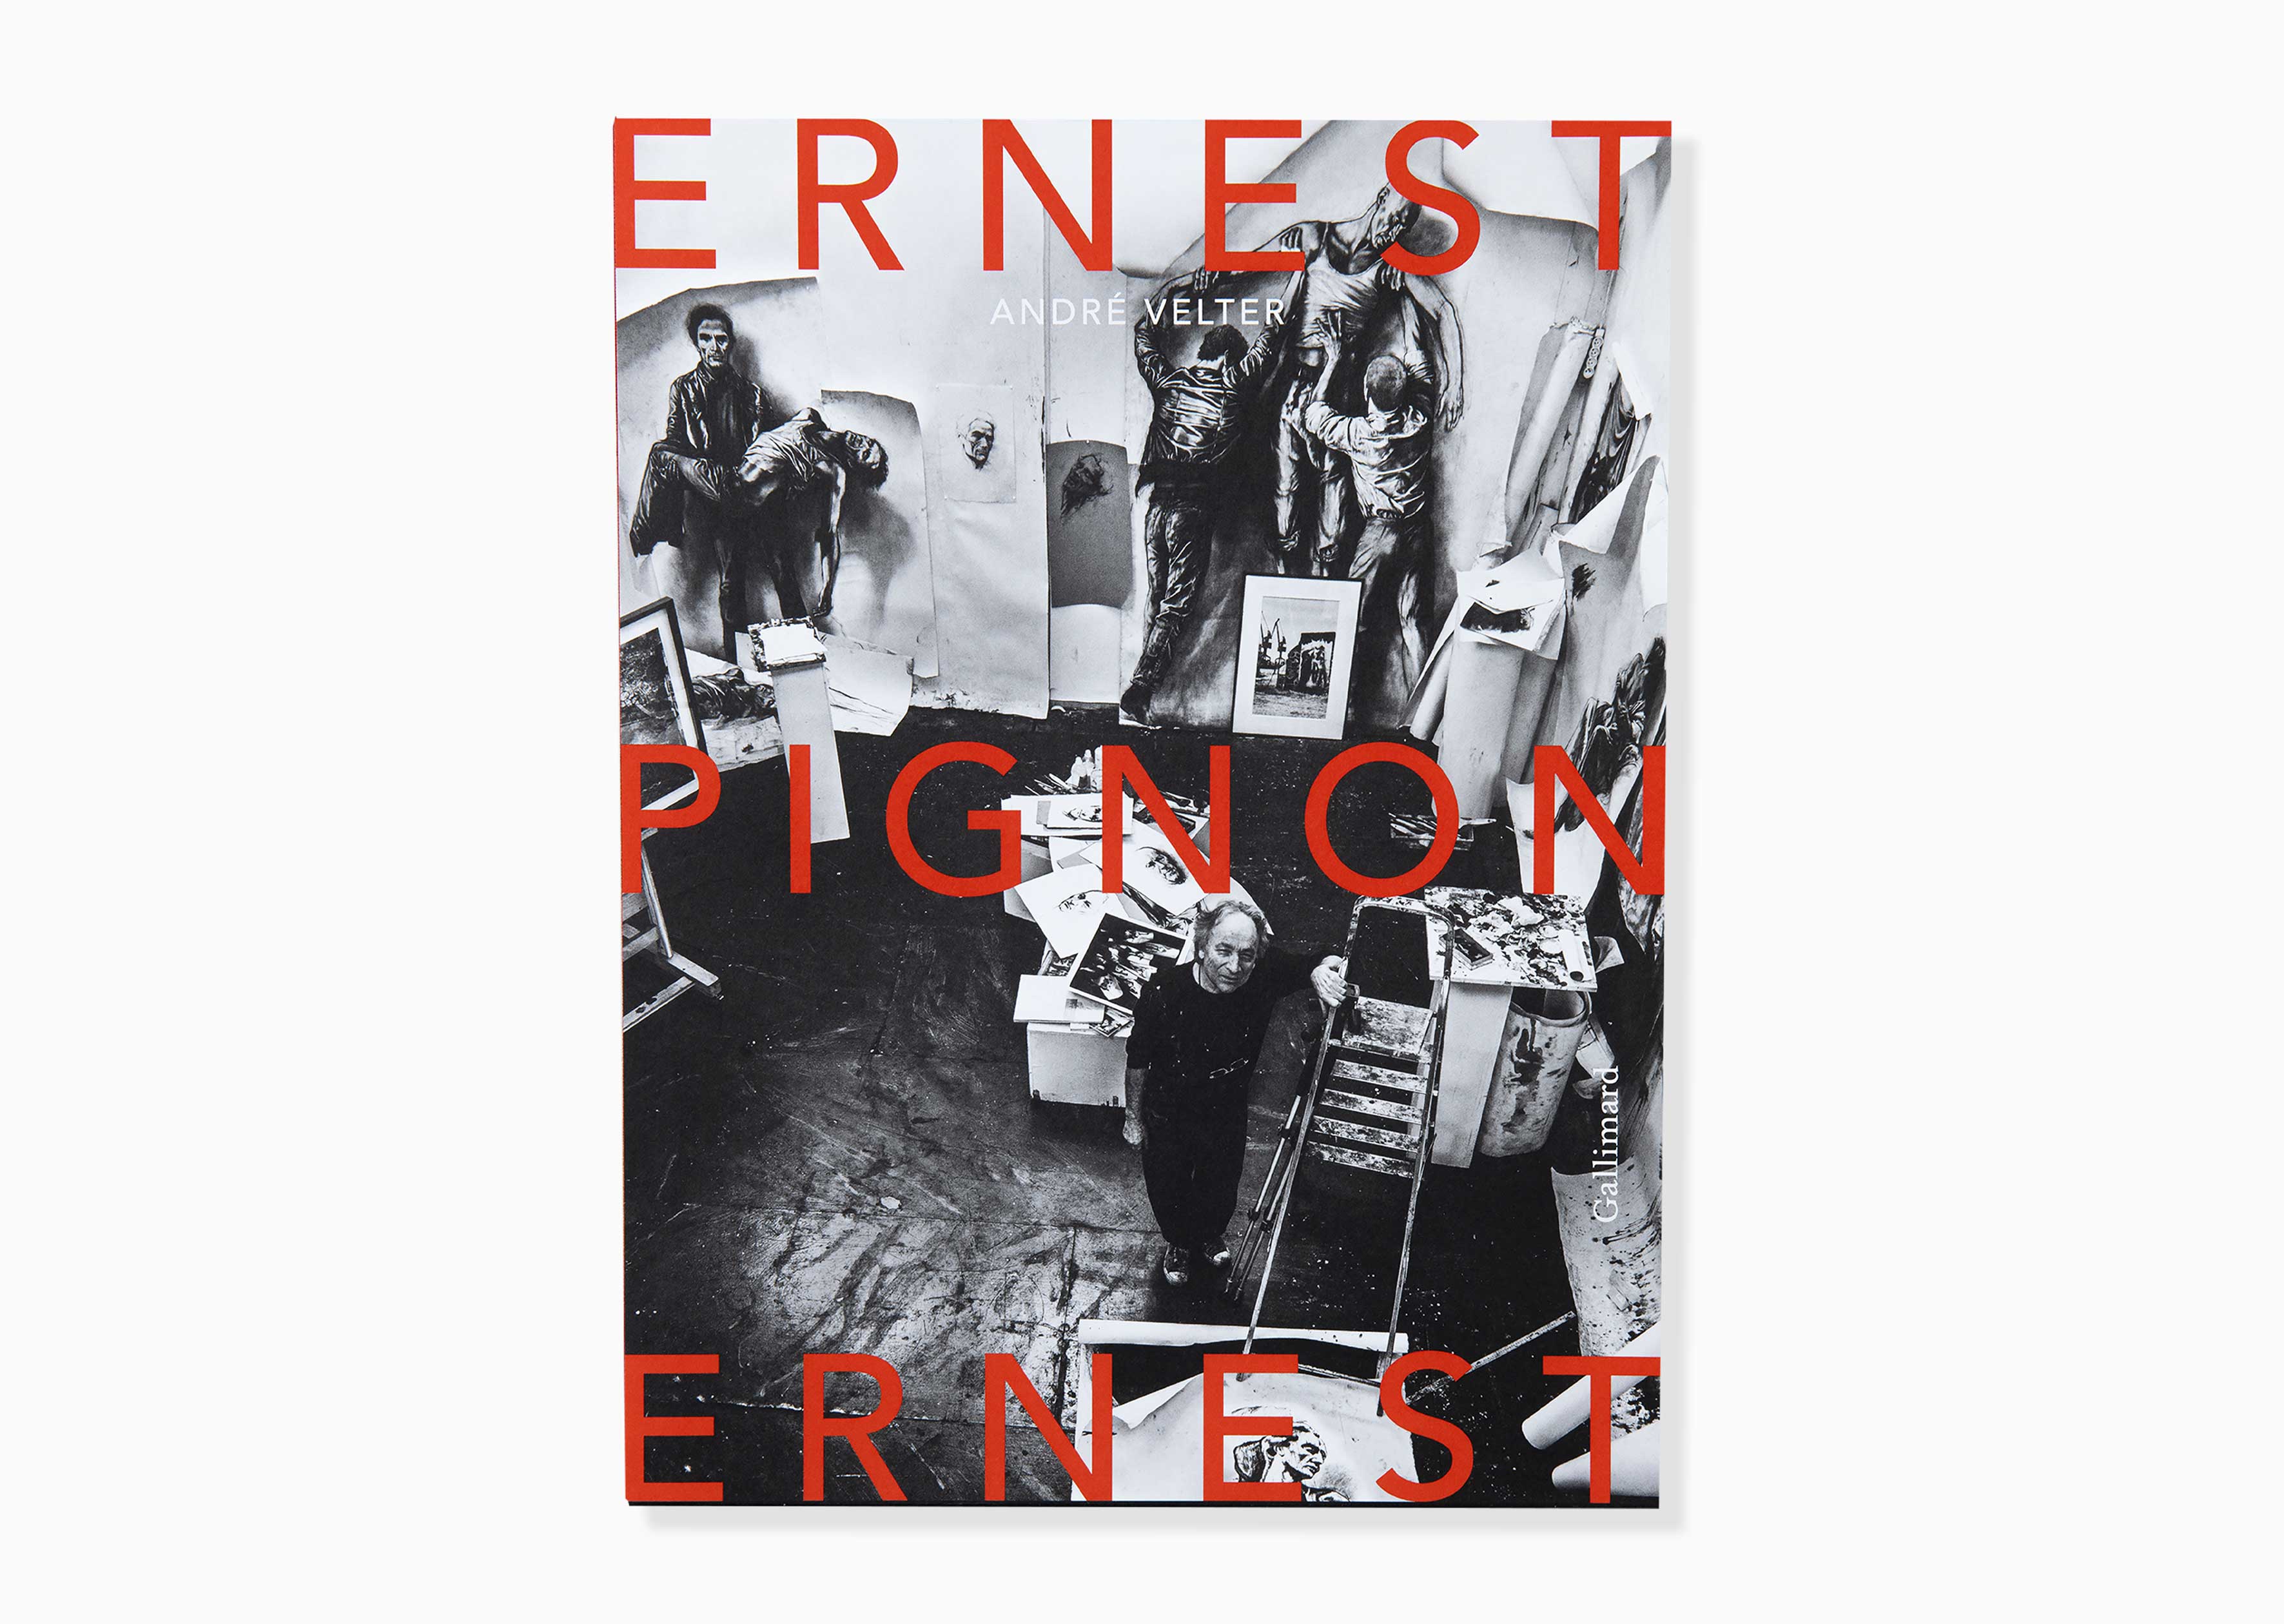 livre Ernest Pignon-Ernest Ernest Pignon-Ernest